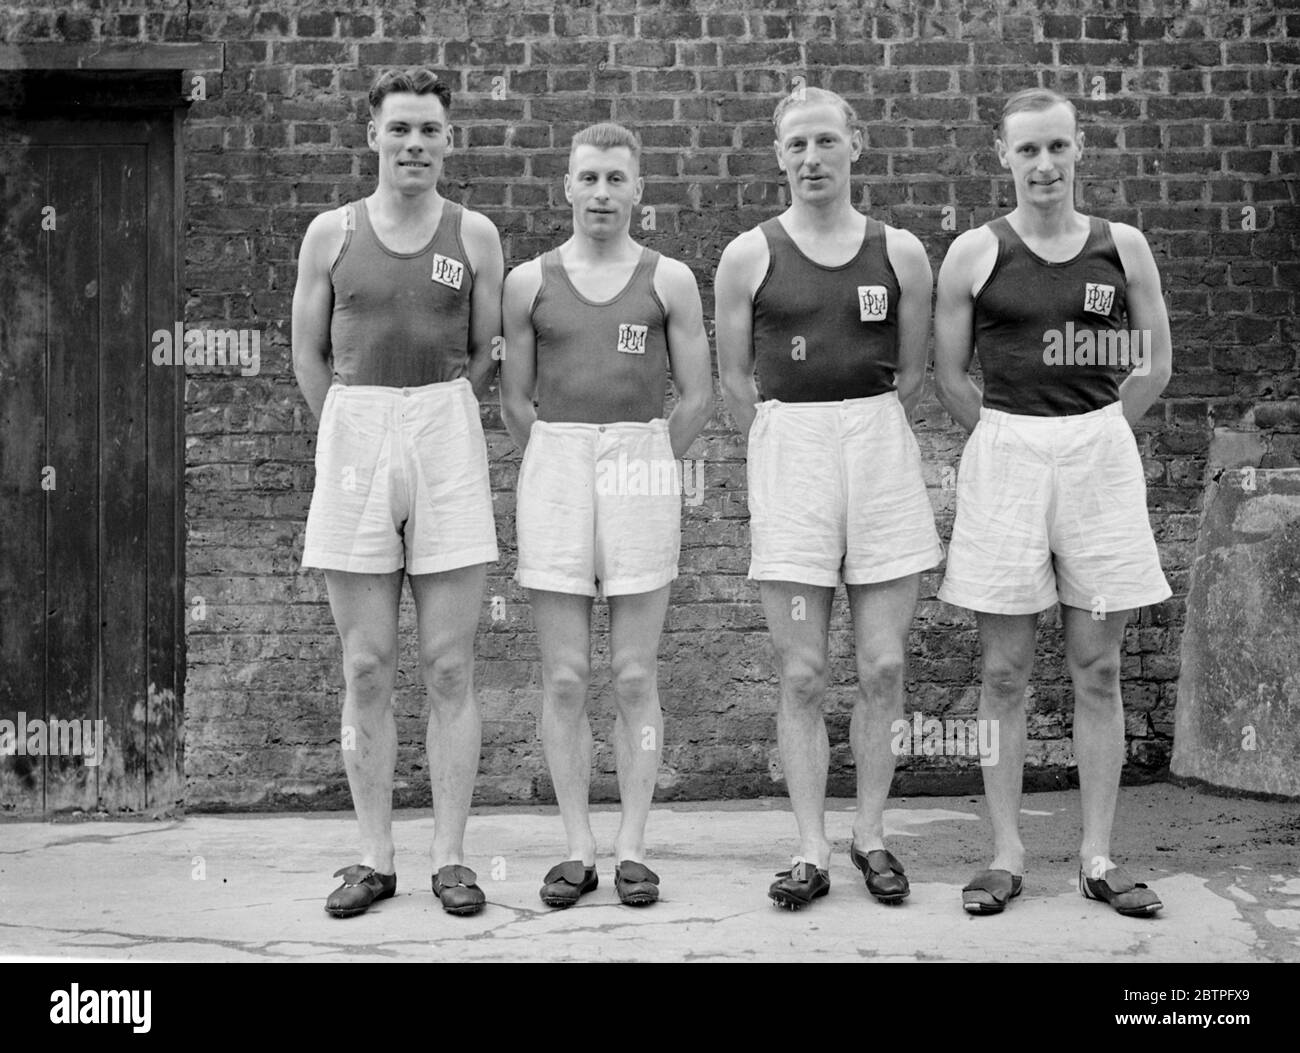 London Papierfabrik Athleten . L G Parkes, R G R Chandler, A E Leggett, R S Mantelow. 1937 Stockfoto